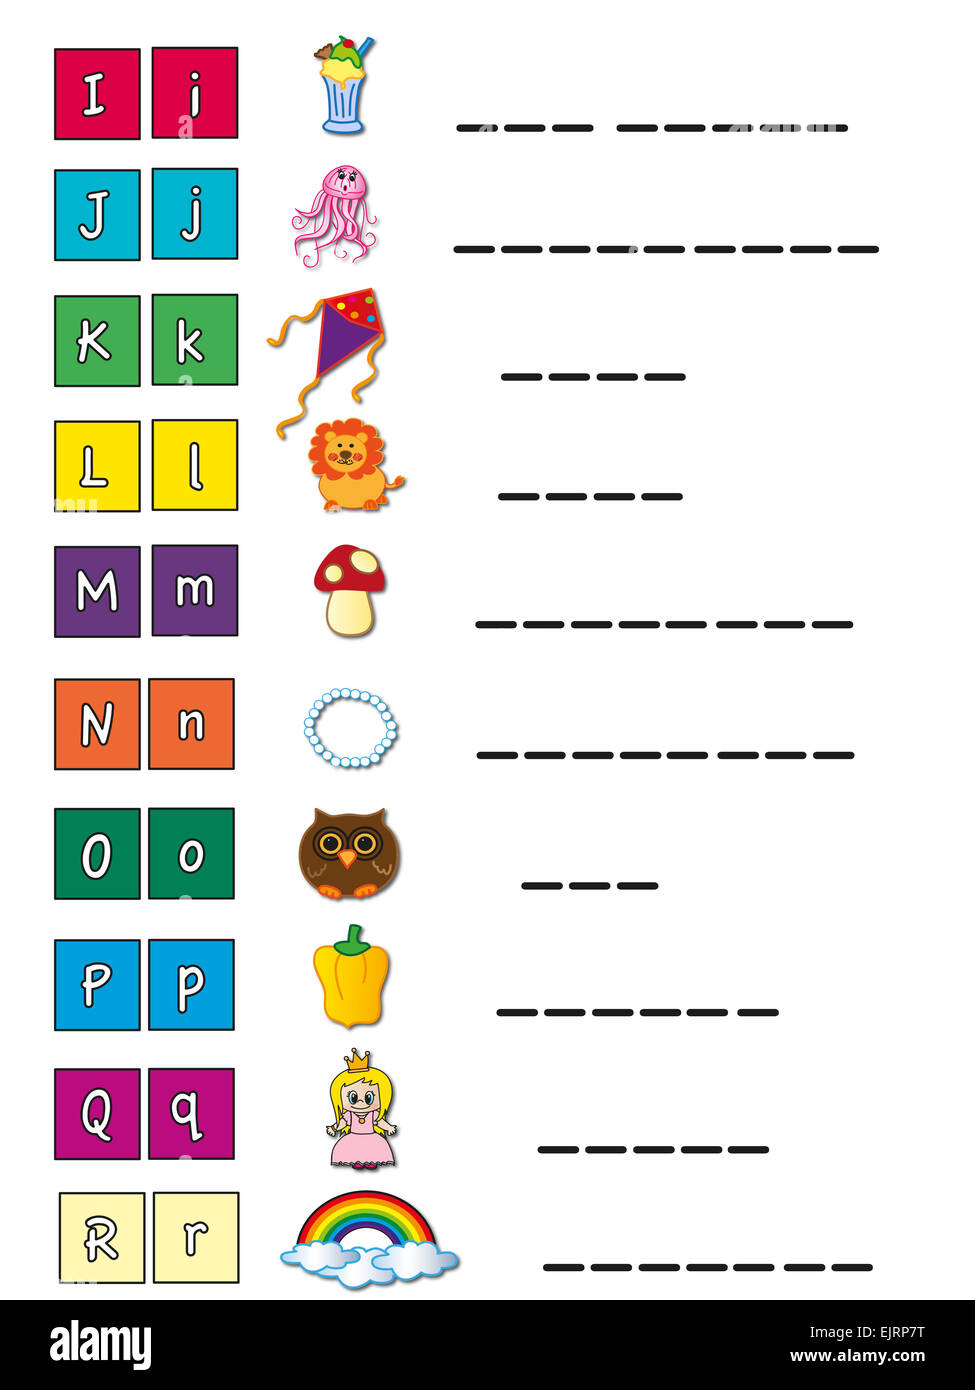 Illustrazione dell'alfabeto di simboli Foto Stock